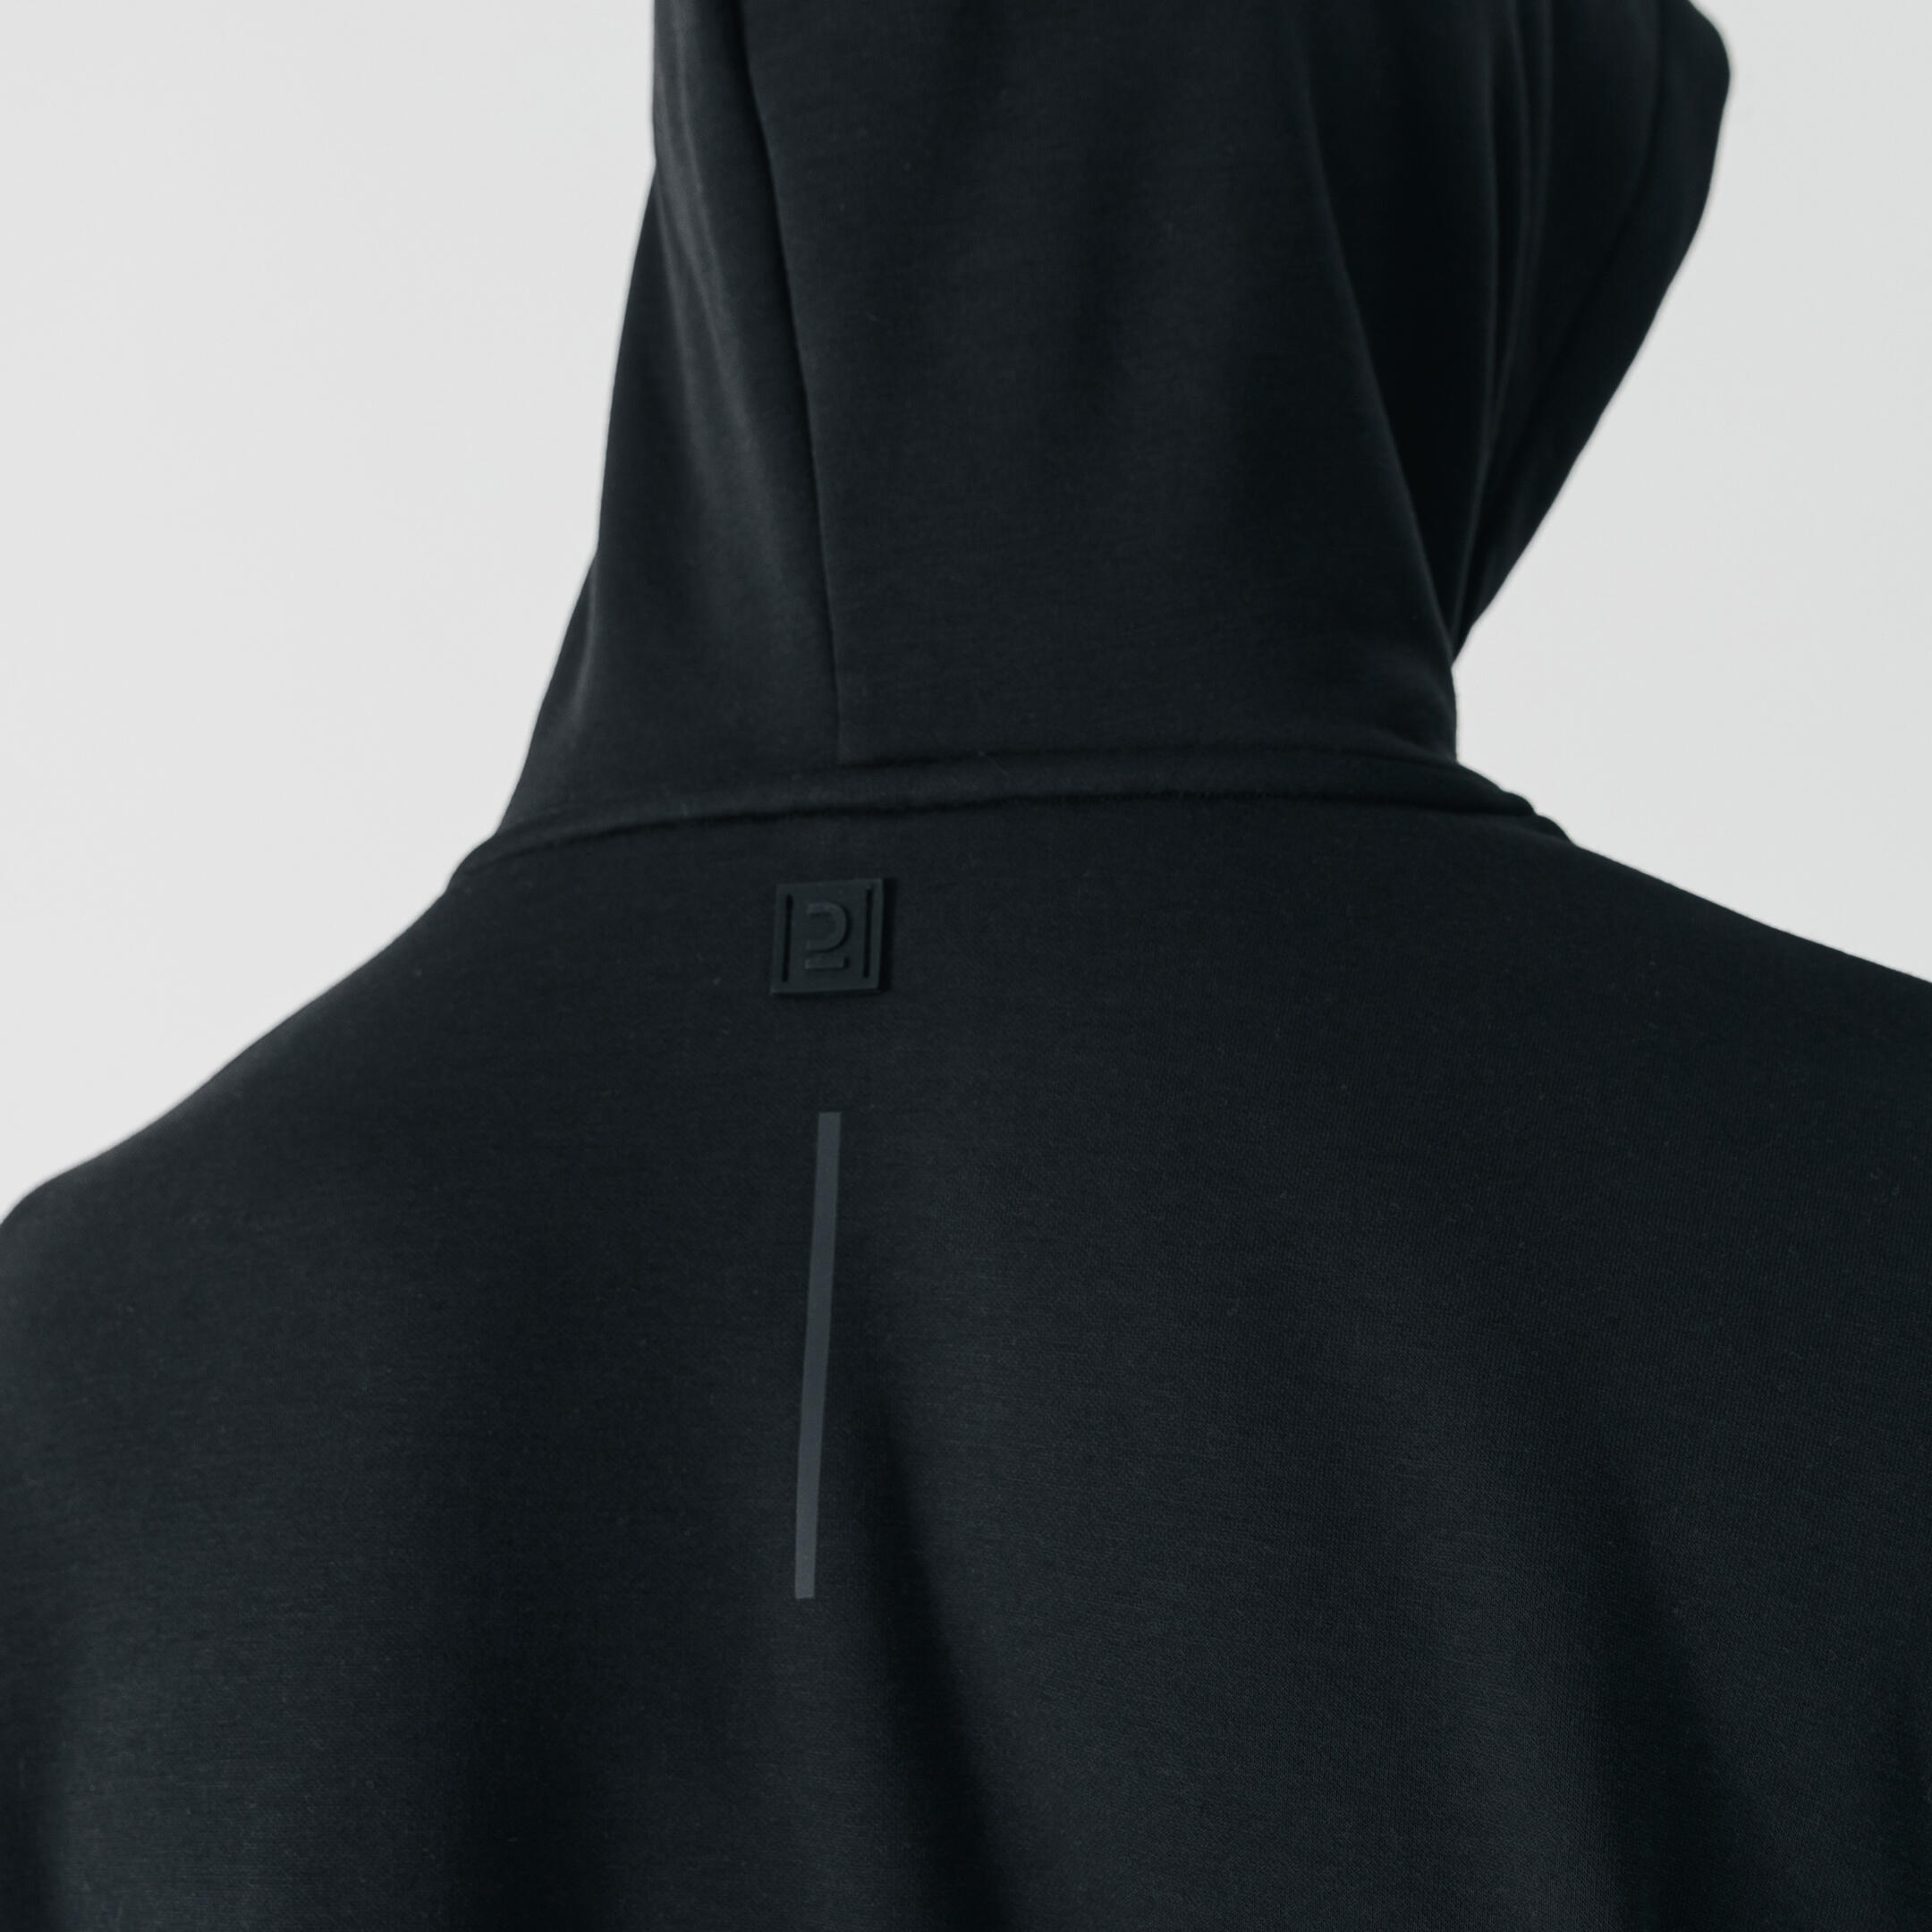 Men's warm running hoodie - Warm 500 - Black 12/12